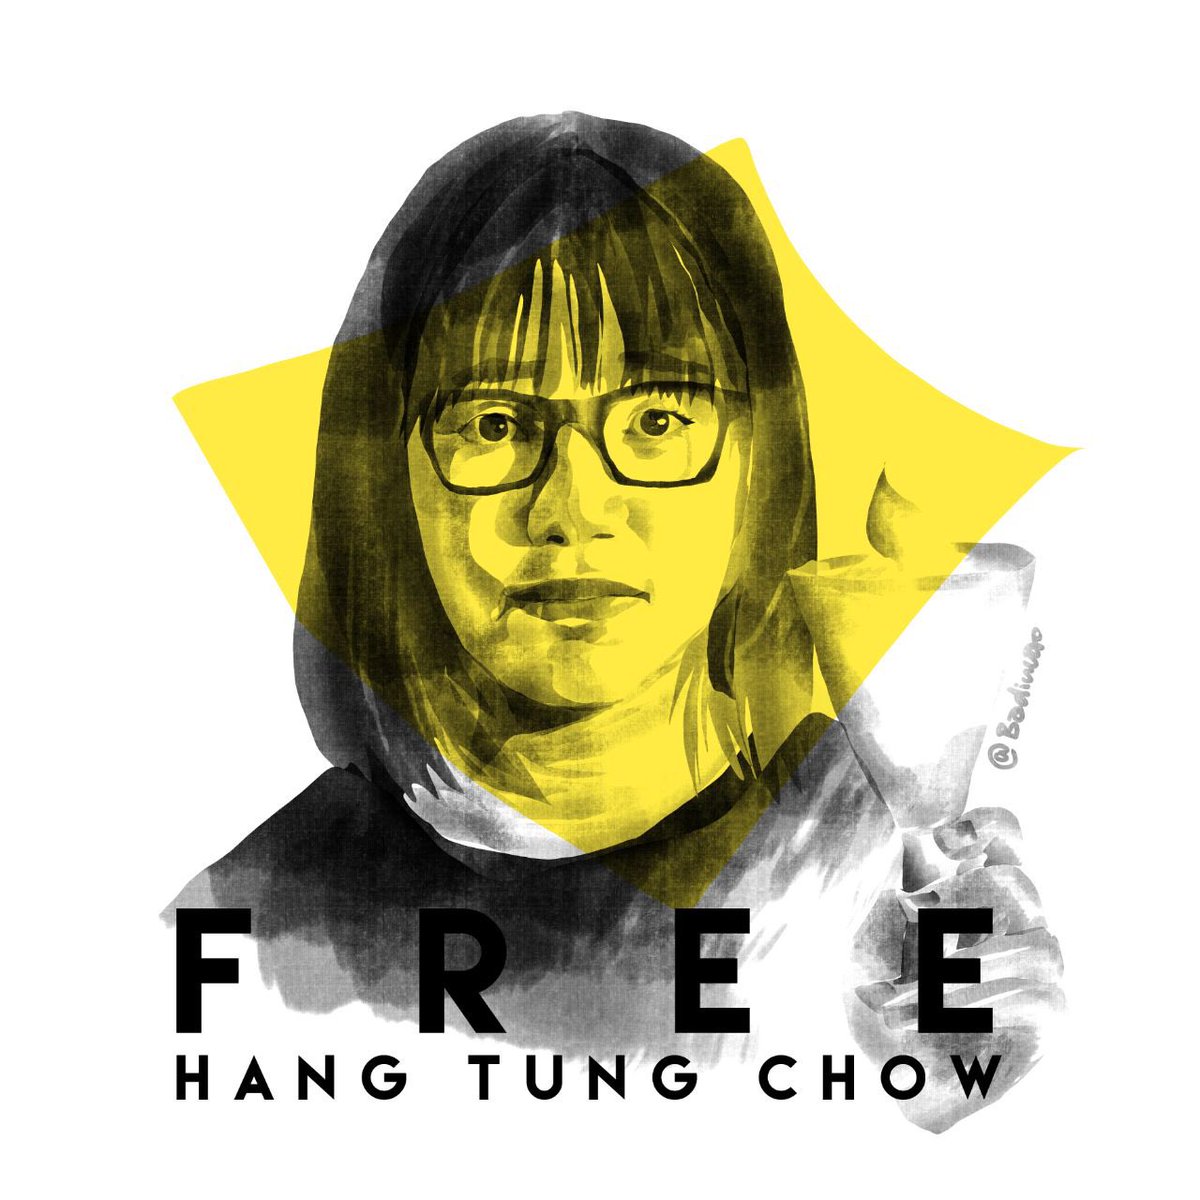 @arnohb112 Free #ChowHangTung

Credit: IG @badiucao